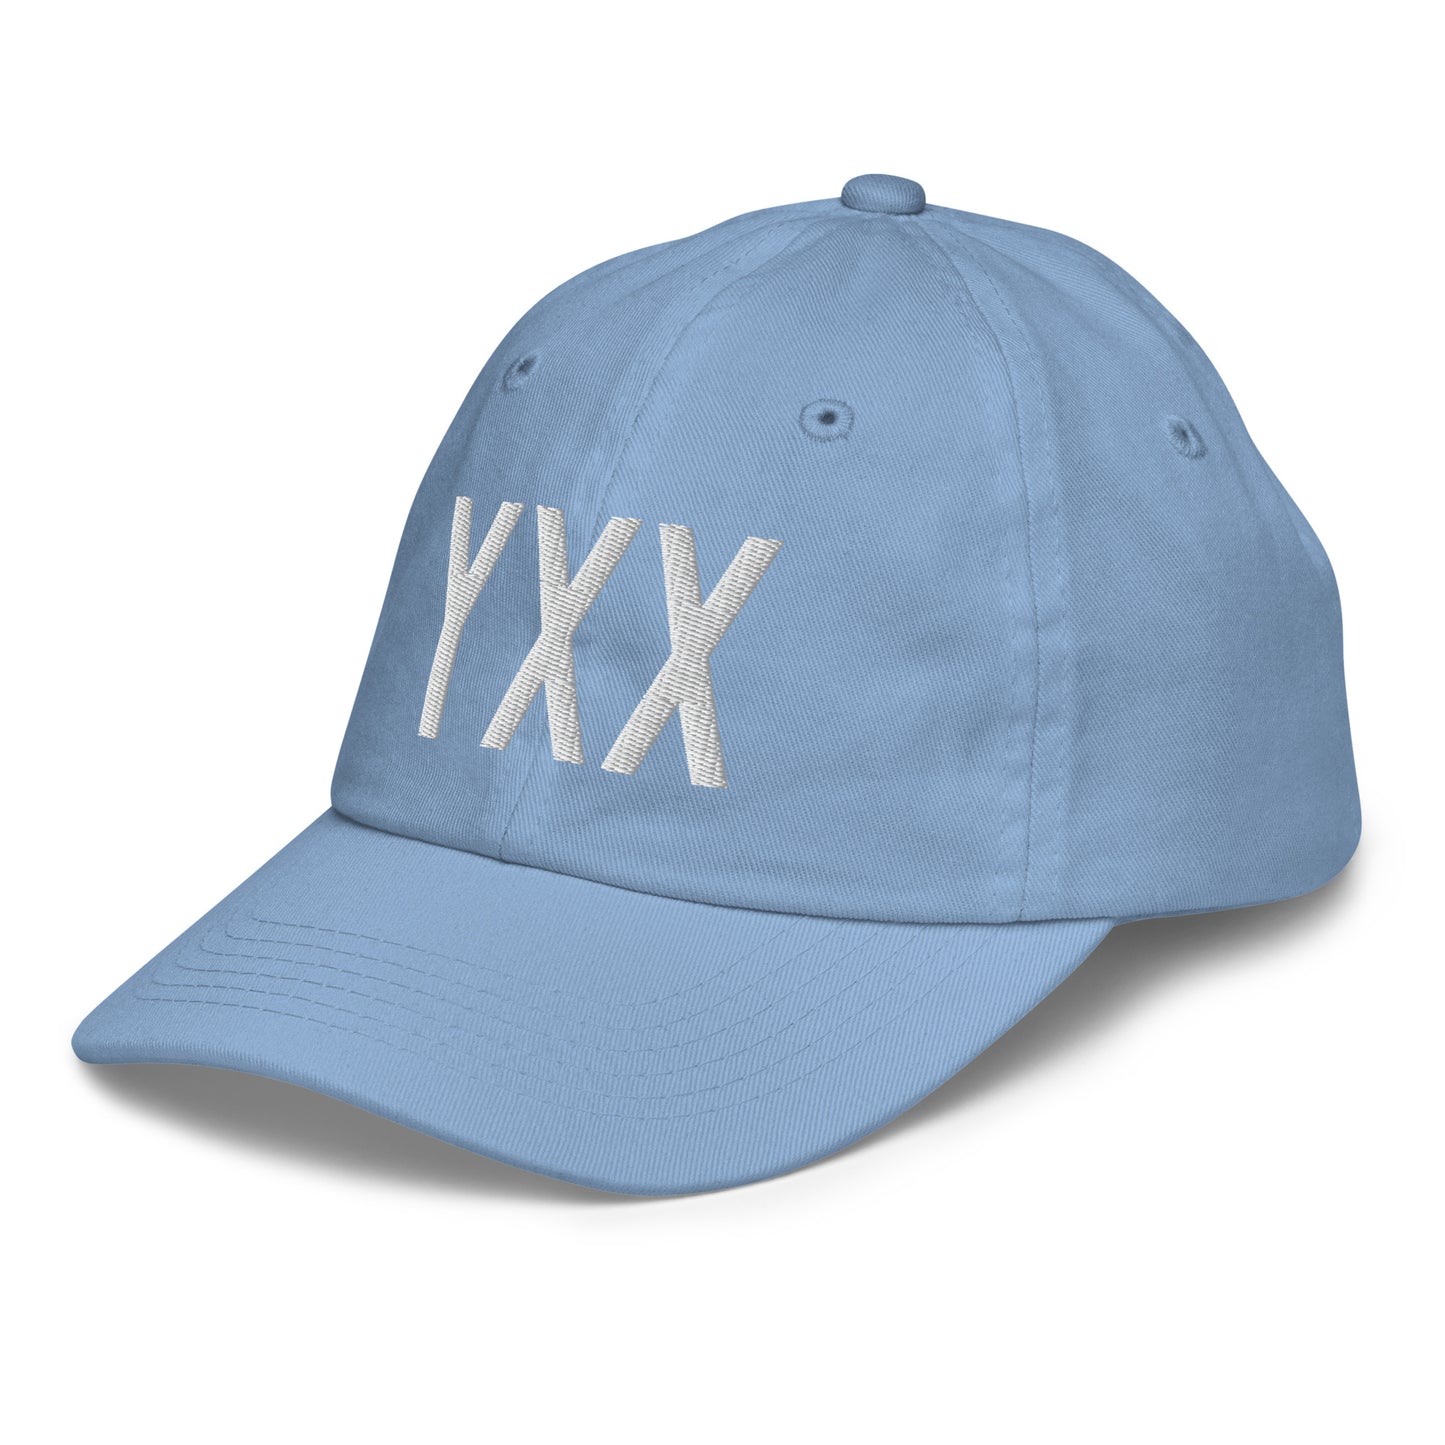 Airport Code Kid's Baseball Cap - White • YXX Abbotsford • YHM Designs - Image 24